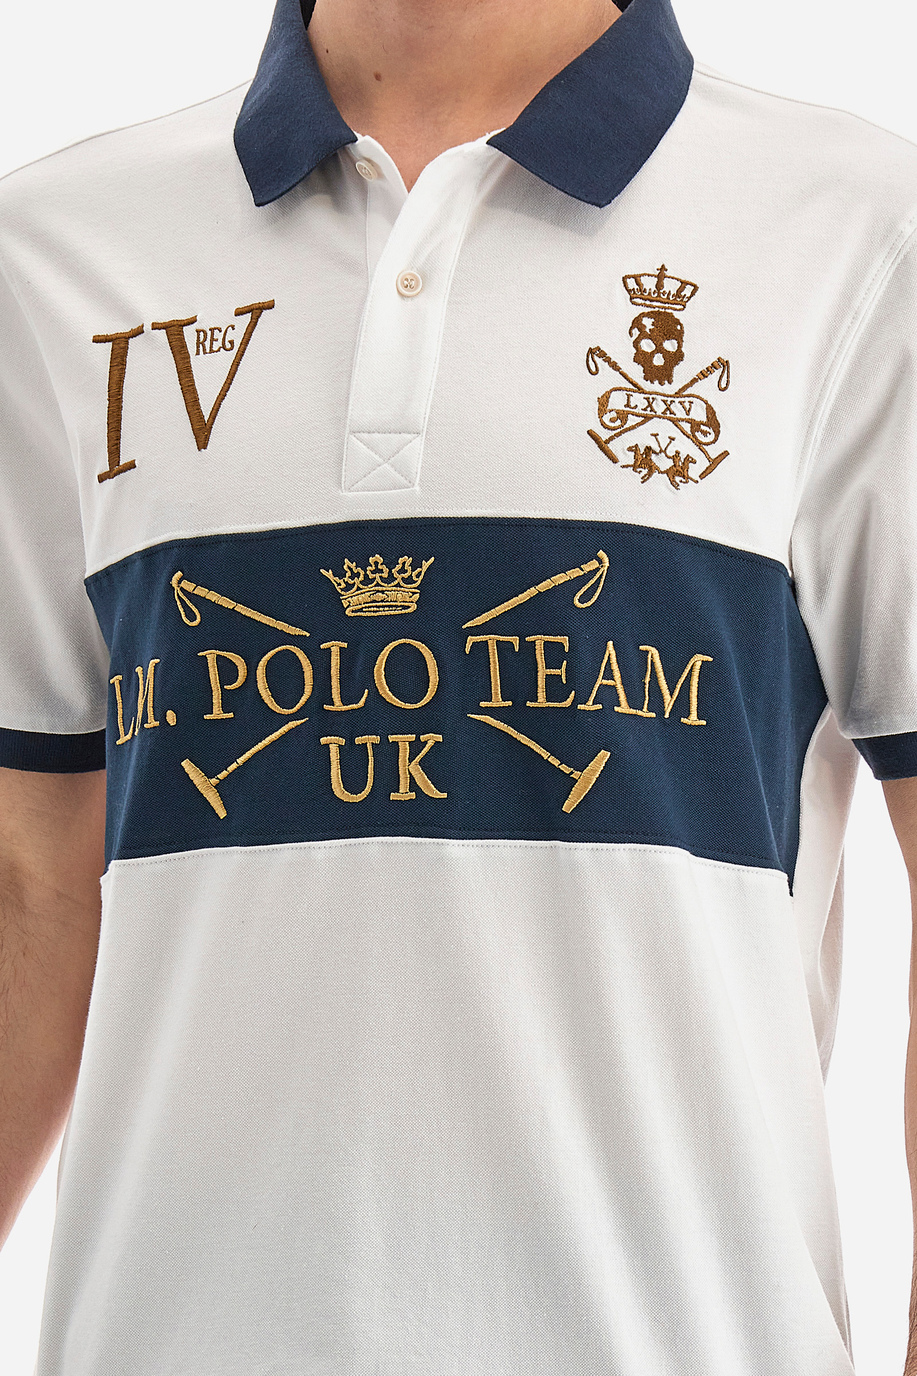 Polo over fit manches courtes homme en coton mélangé - Vince - Soldes | La Martina - Official Online Shop